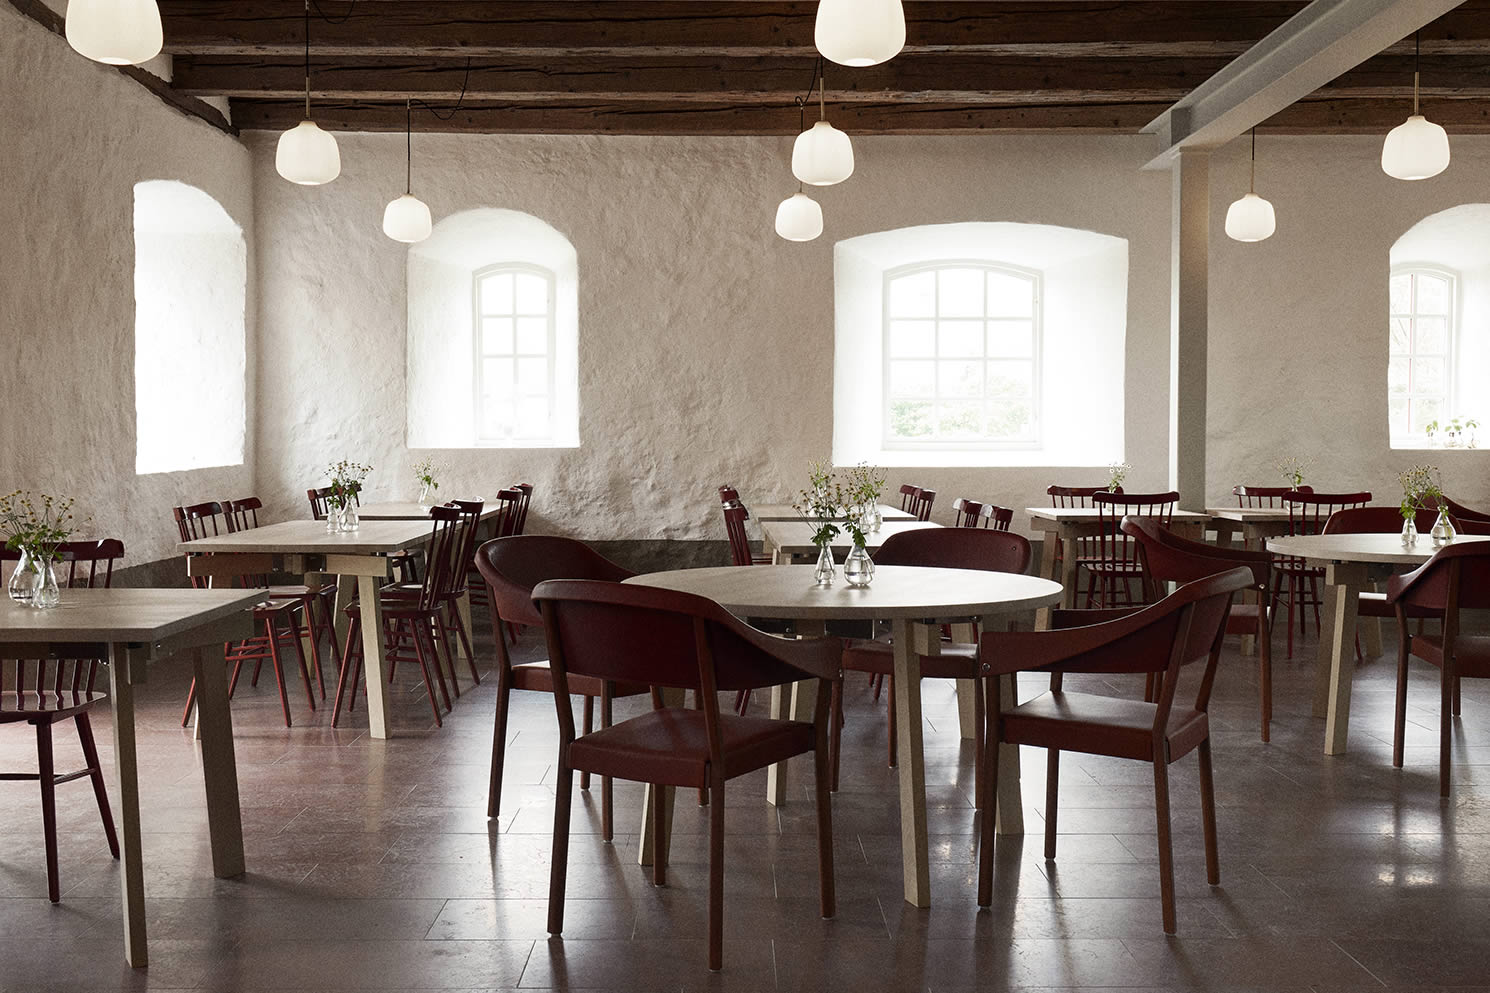 Wanås餐厅与Blå站和罗斯恩斯椅子的椅子从Wanås庄园覆盖着皮革。